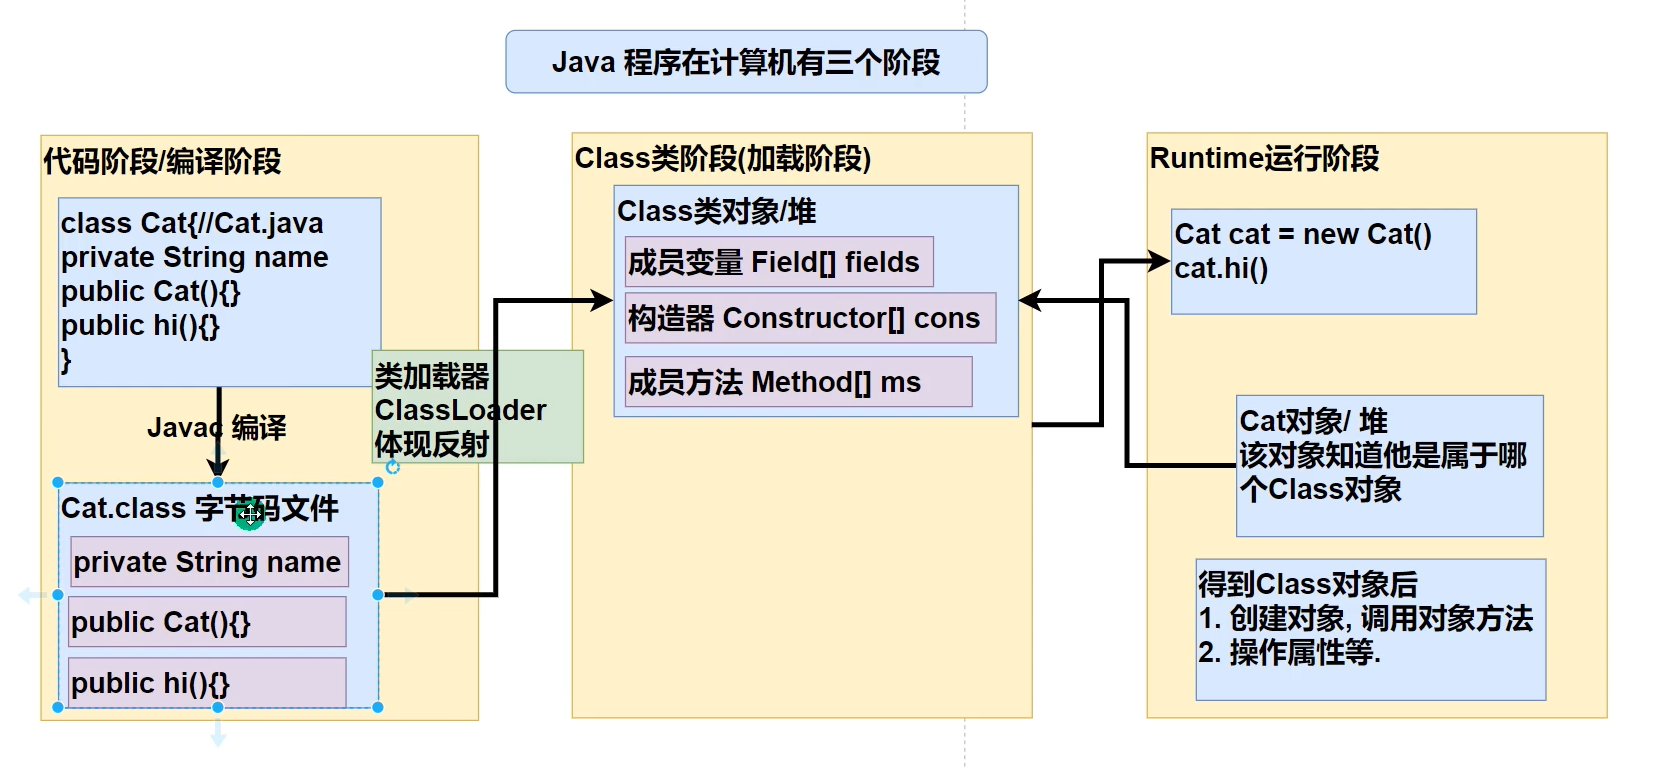 Java程序在计算机中的过程图解